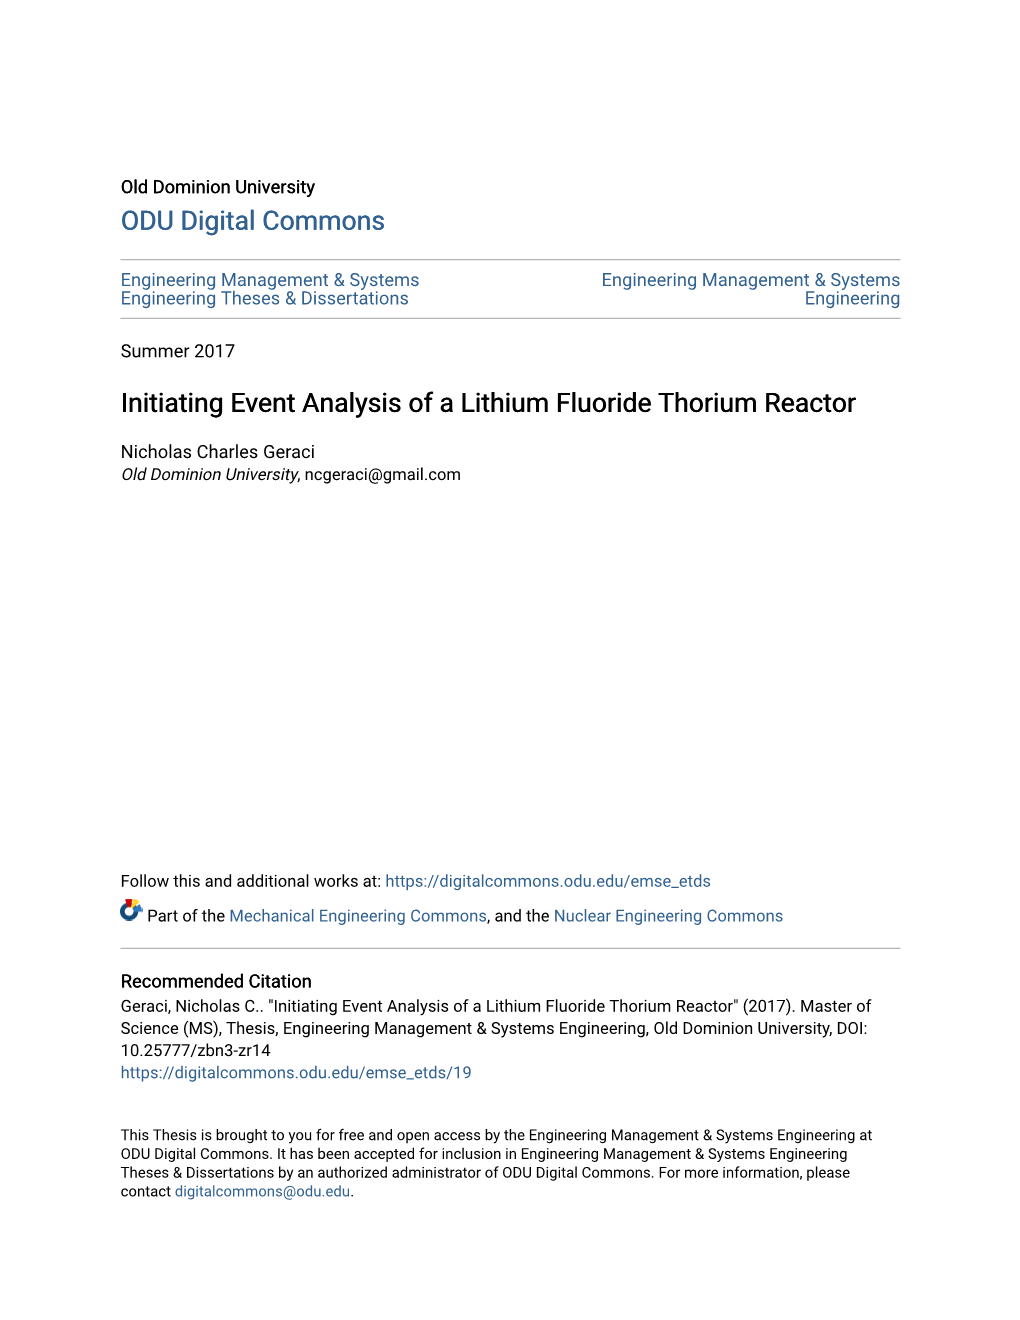 Initiating Event Analysis of a Lithium Fluoride Thorium Reactor